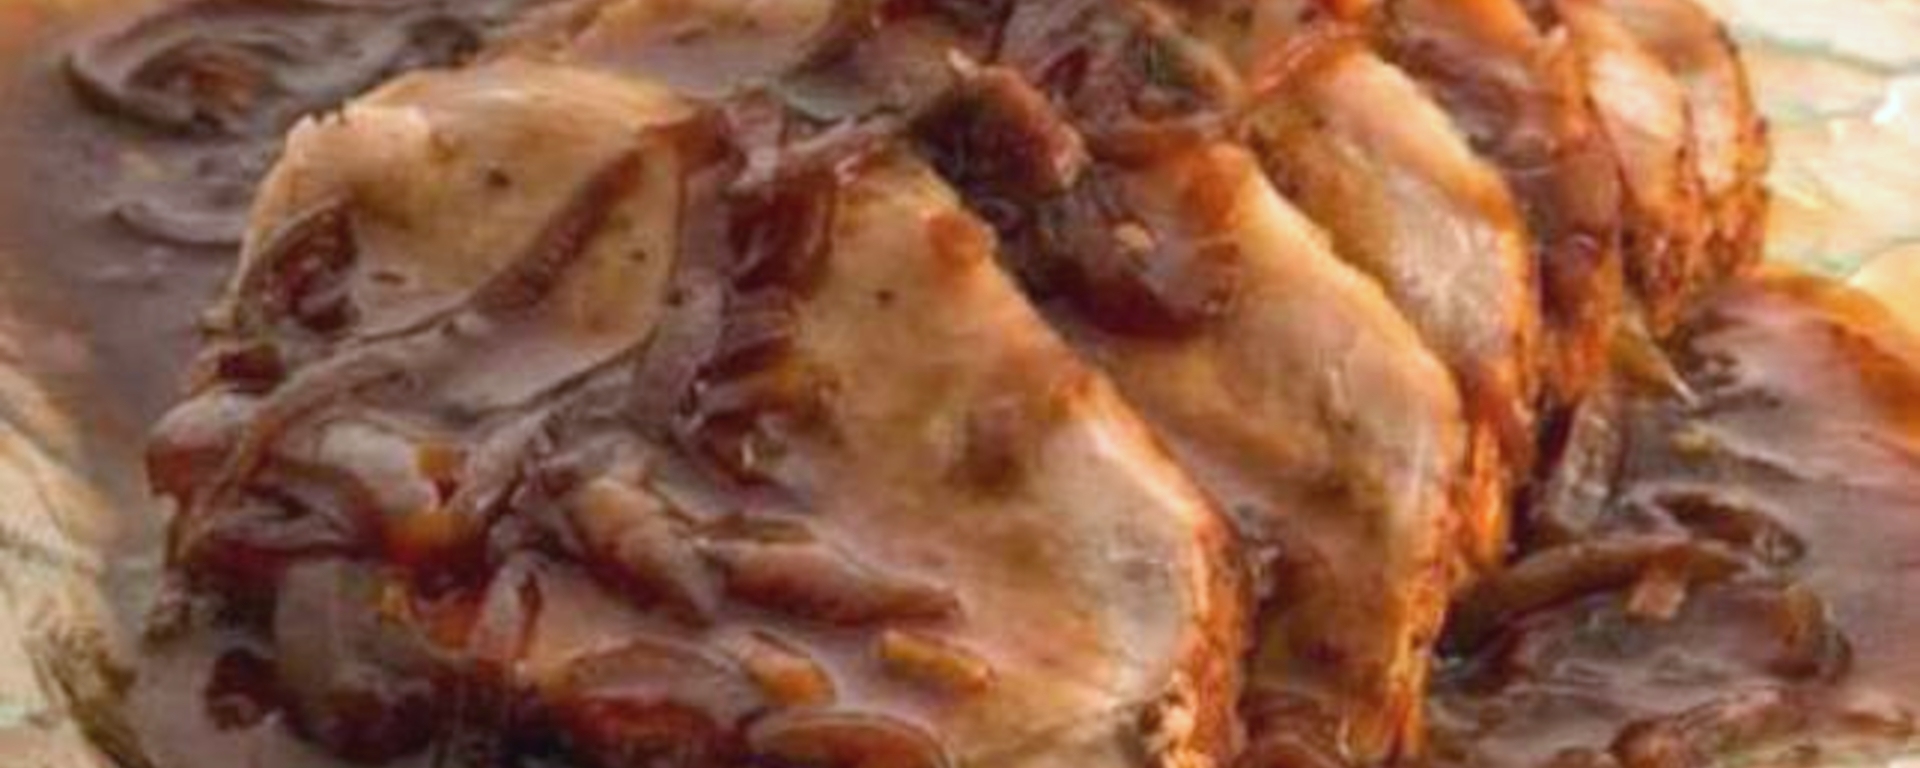 LuvMyRecipe.com - Delicious Pork Roast Recipe Featured